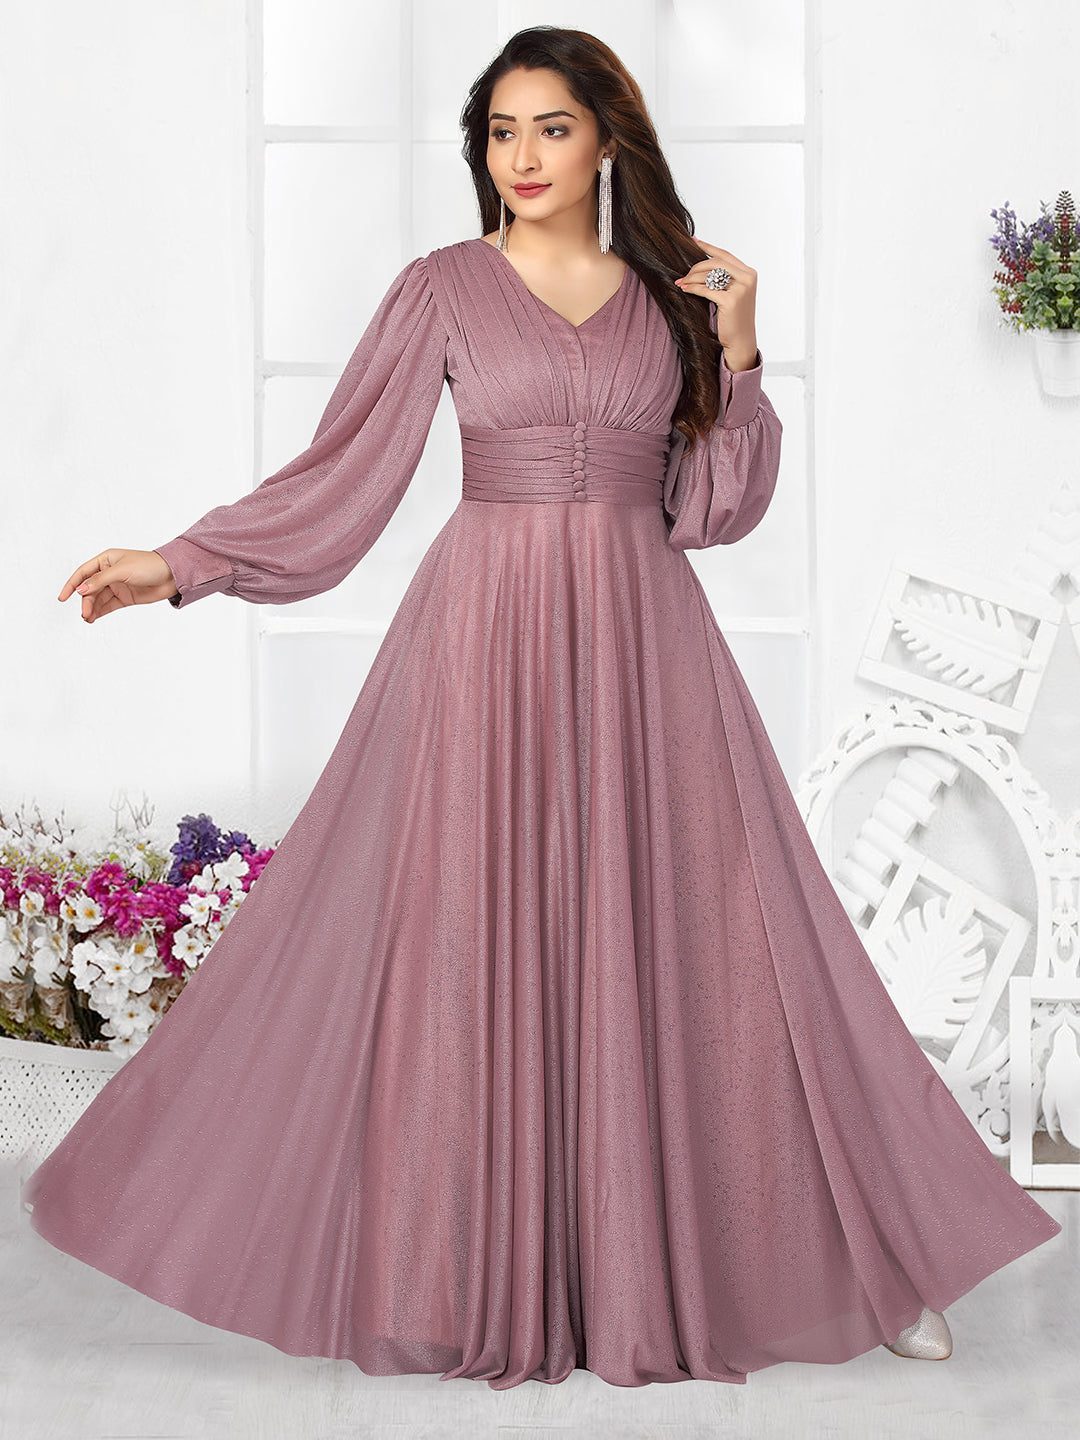 VM TEJANI Anarkali Gown Price in India - Buy VM TEJANI Anarkali Gown online  at Flipkart.com